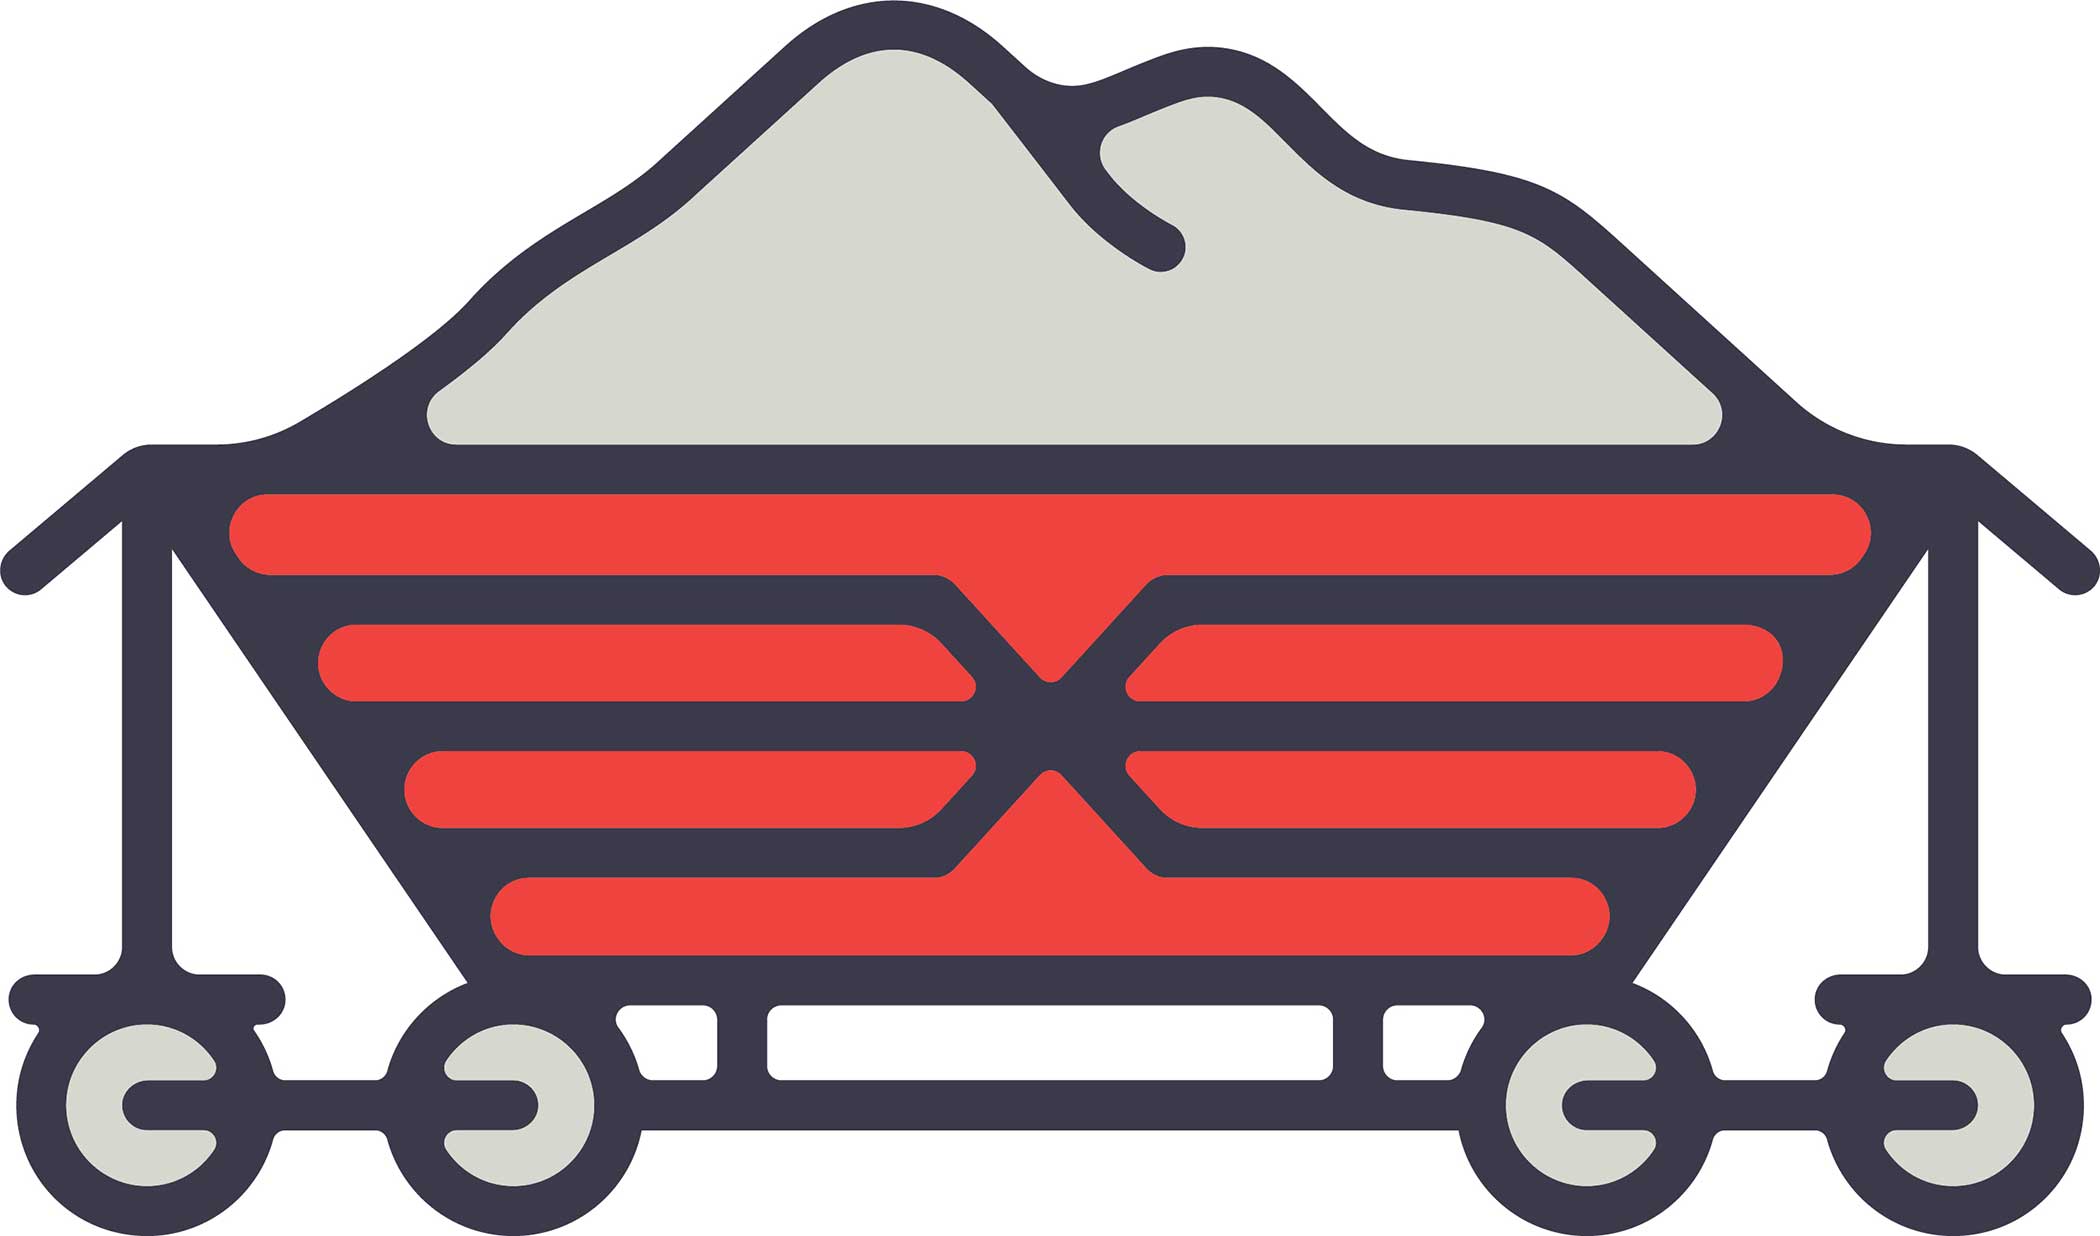 The pinehurst sandmines logo